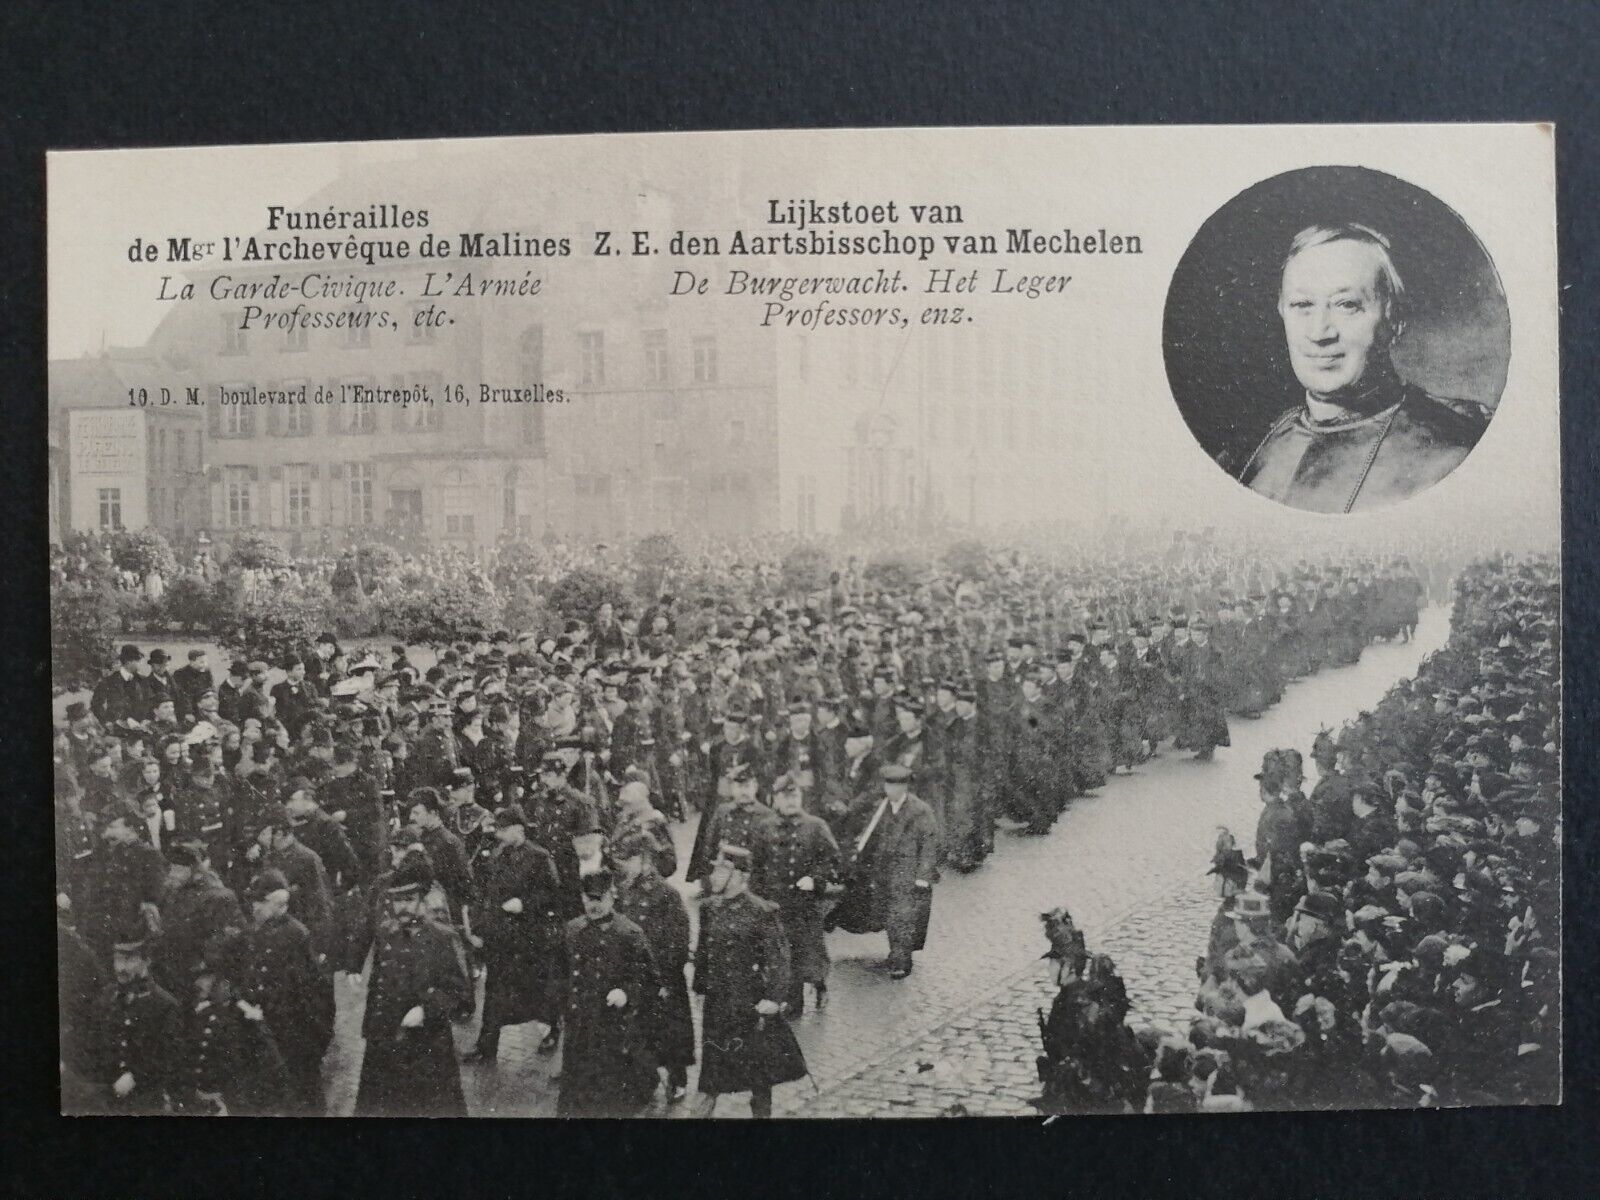 cpa BELGIUM MALINES Death Funeral of ARCHBISHOP Pierre Lambert GOOSSENS in 1906